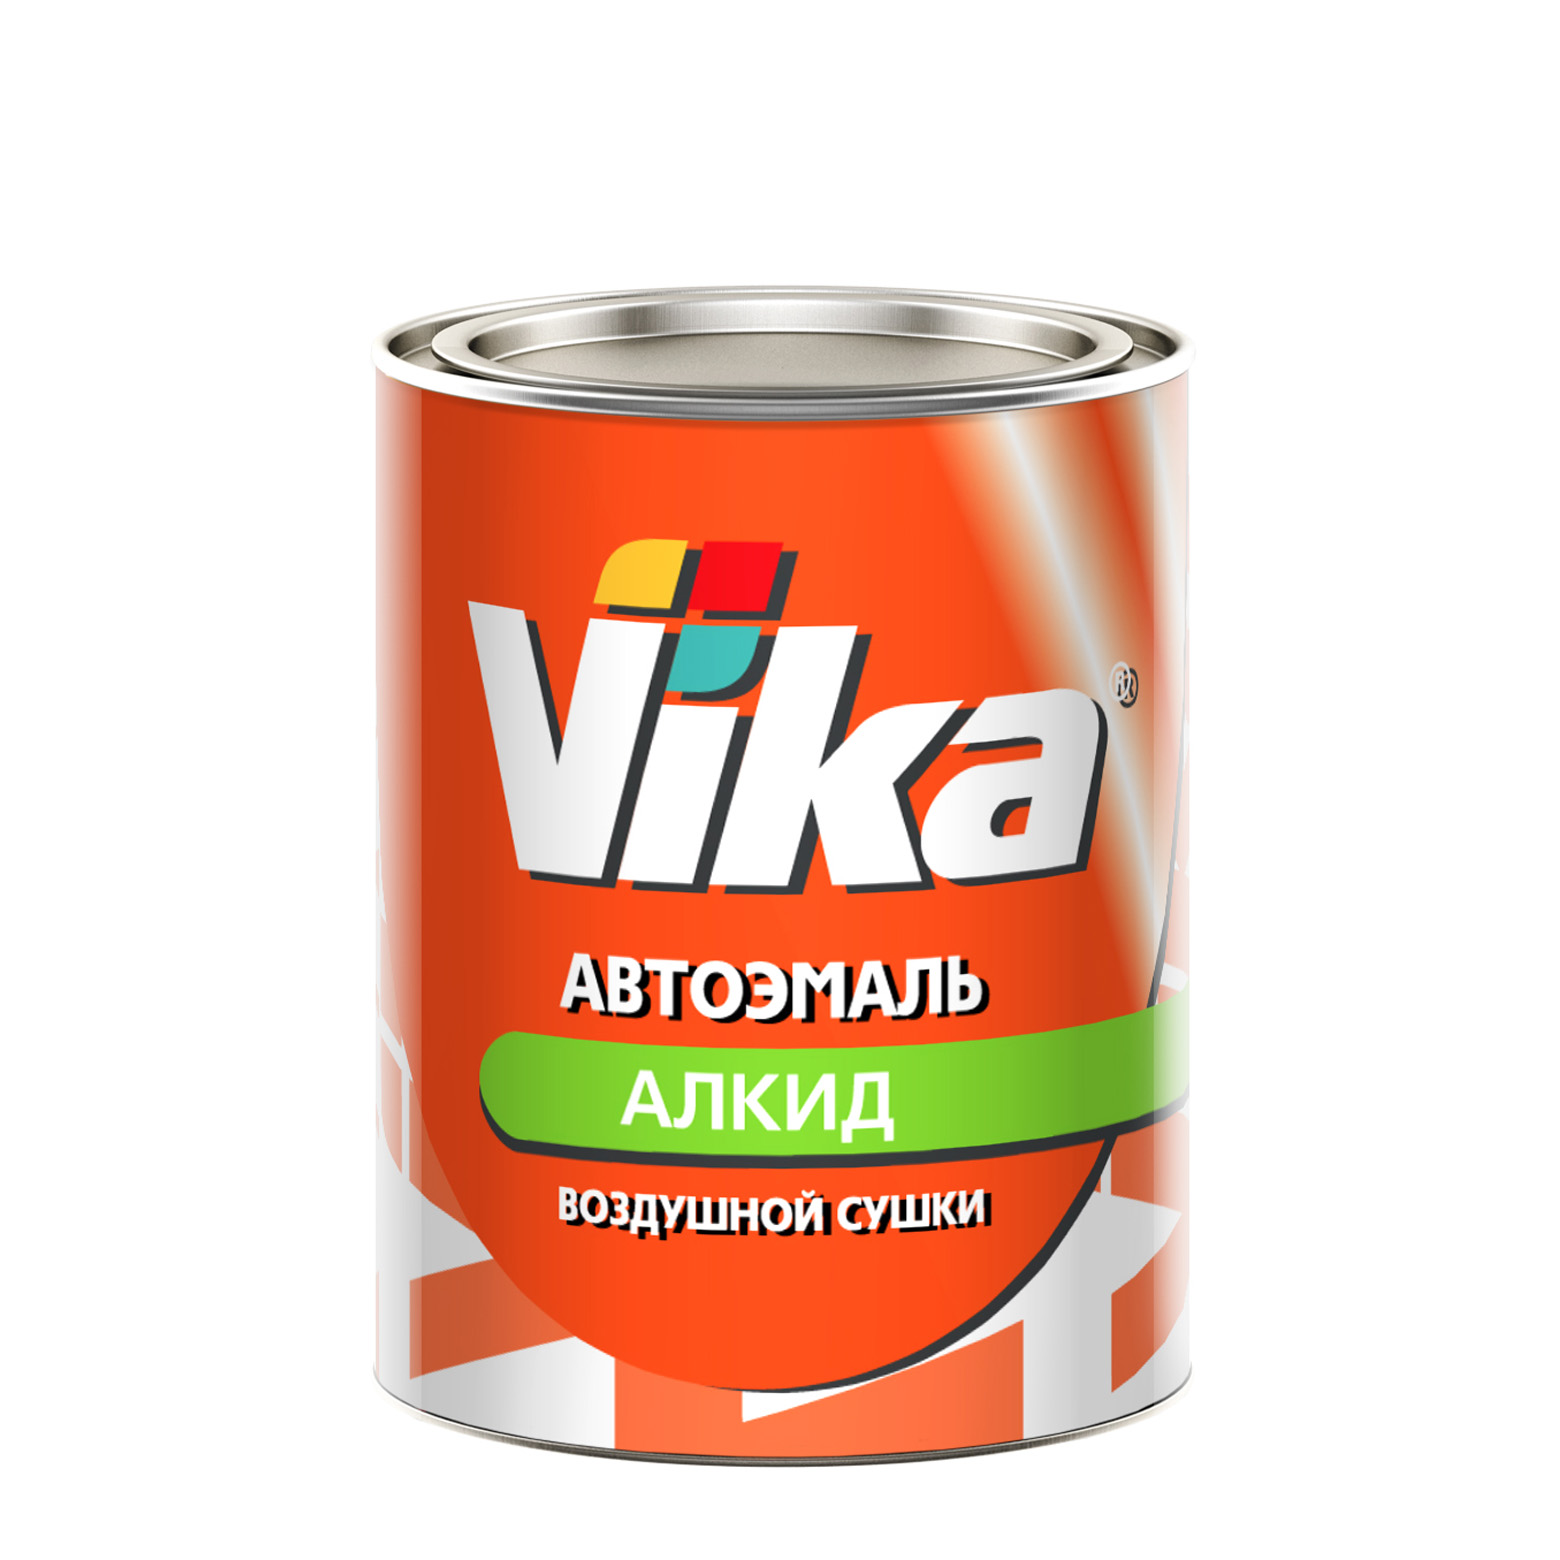 Фото 1 - Автоэмаль Vika-60, цвет 671 Серая алкидная глянцевая естественной сушки - 0,8 кг.